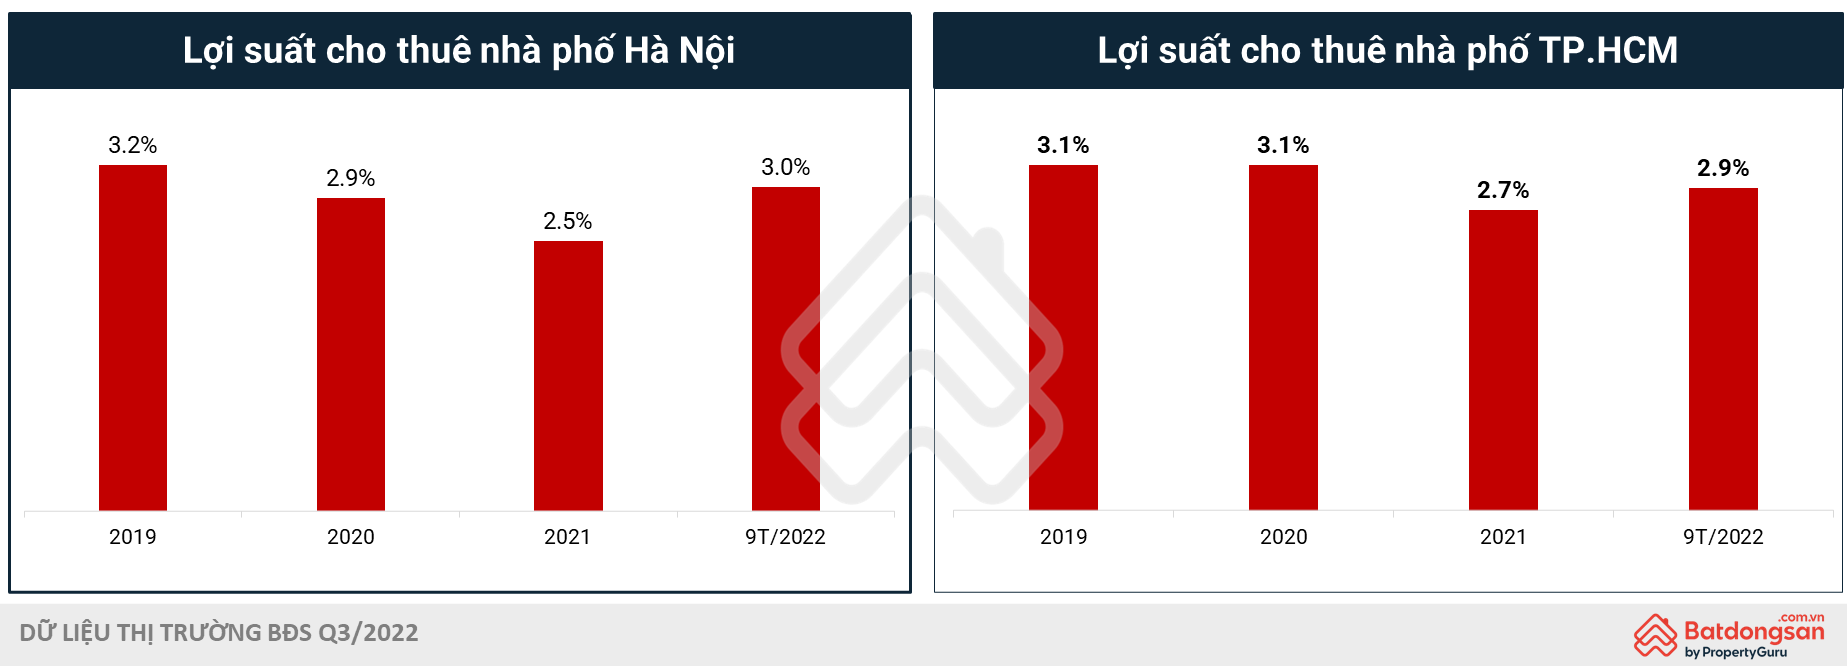 Lợi suất cho thuê nhà phố tại Hà Nội và TP.HCM tăng trưởng trở lại - batdongsanBiz